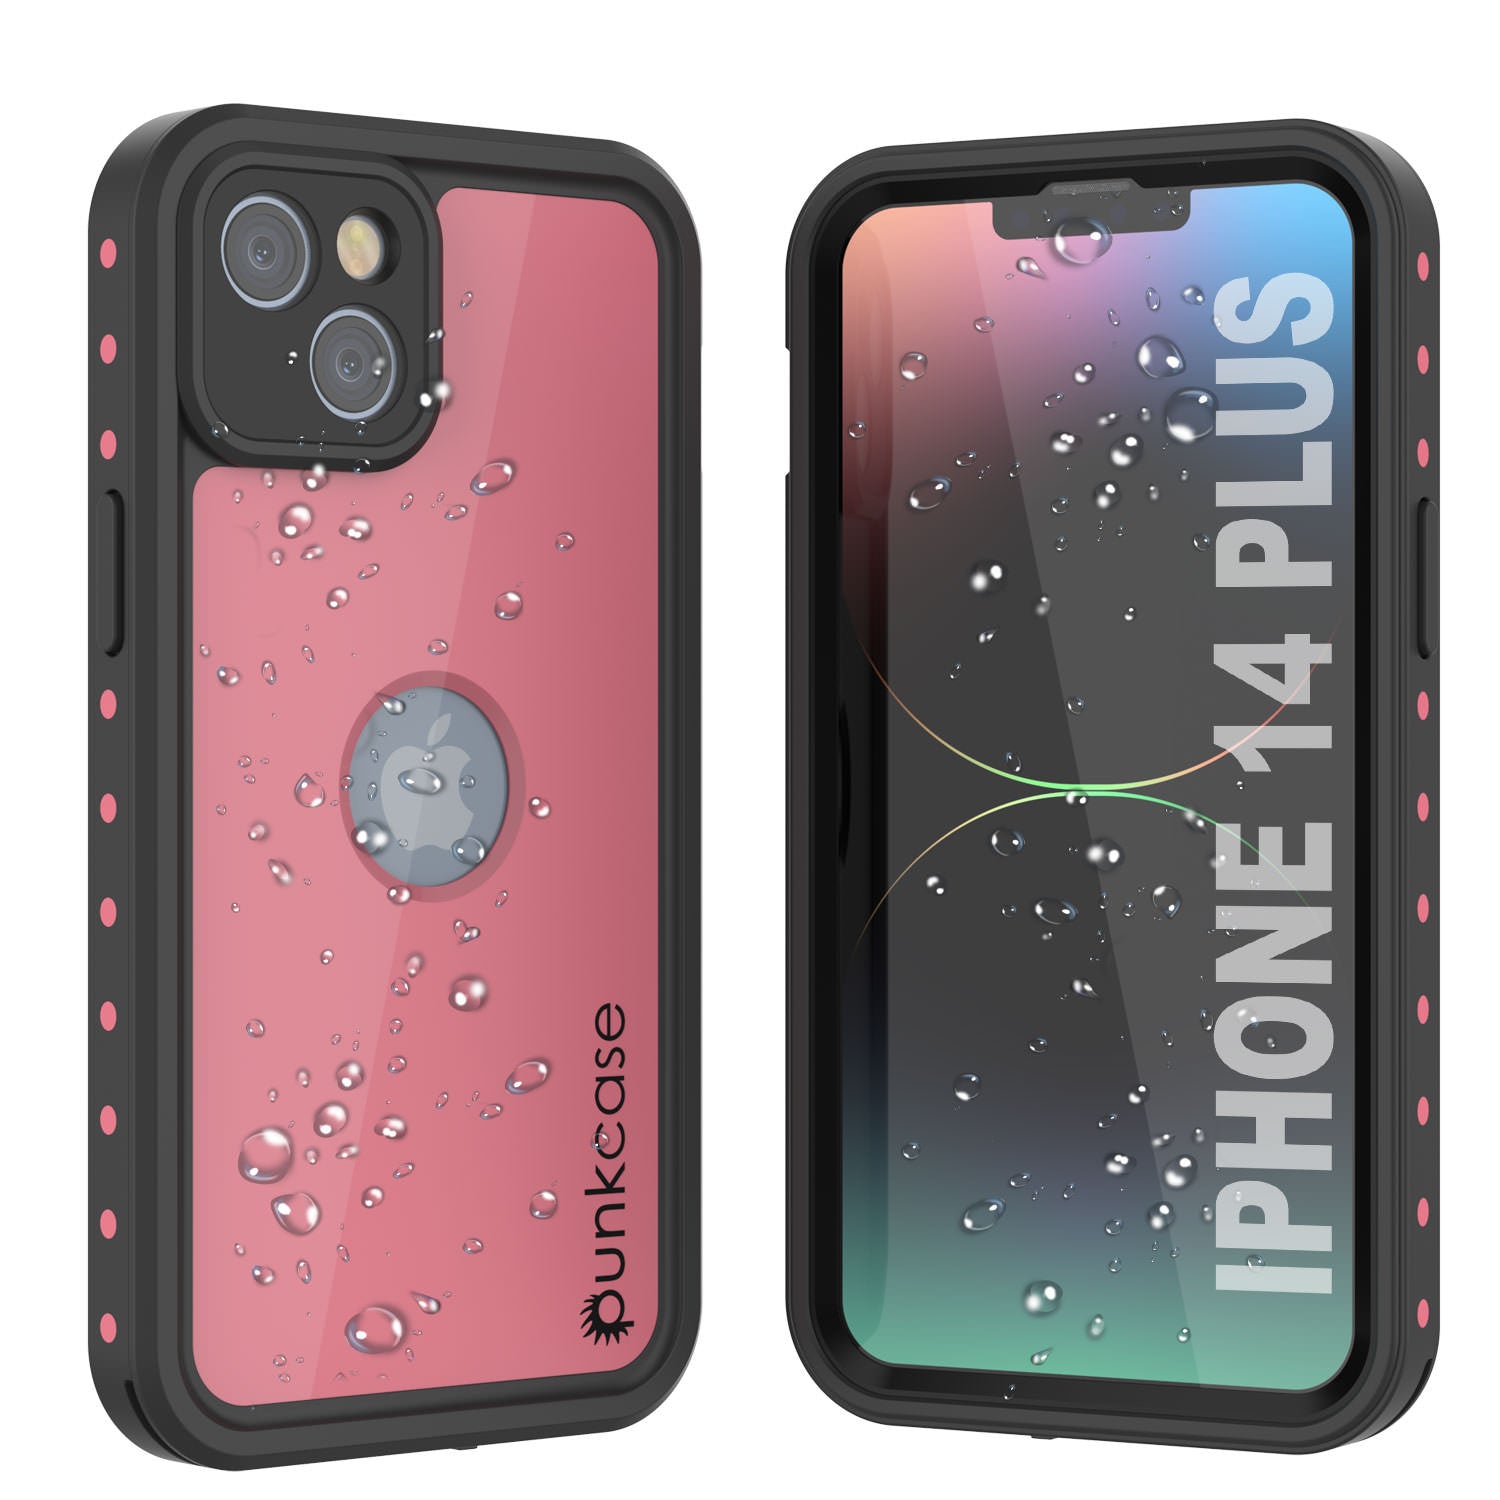 iPhone 14 Plus Waterproof IP68 Case, Punkcase [Pink] [StudStar Series] [Slim Fit] [Dirtproof]